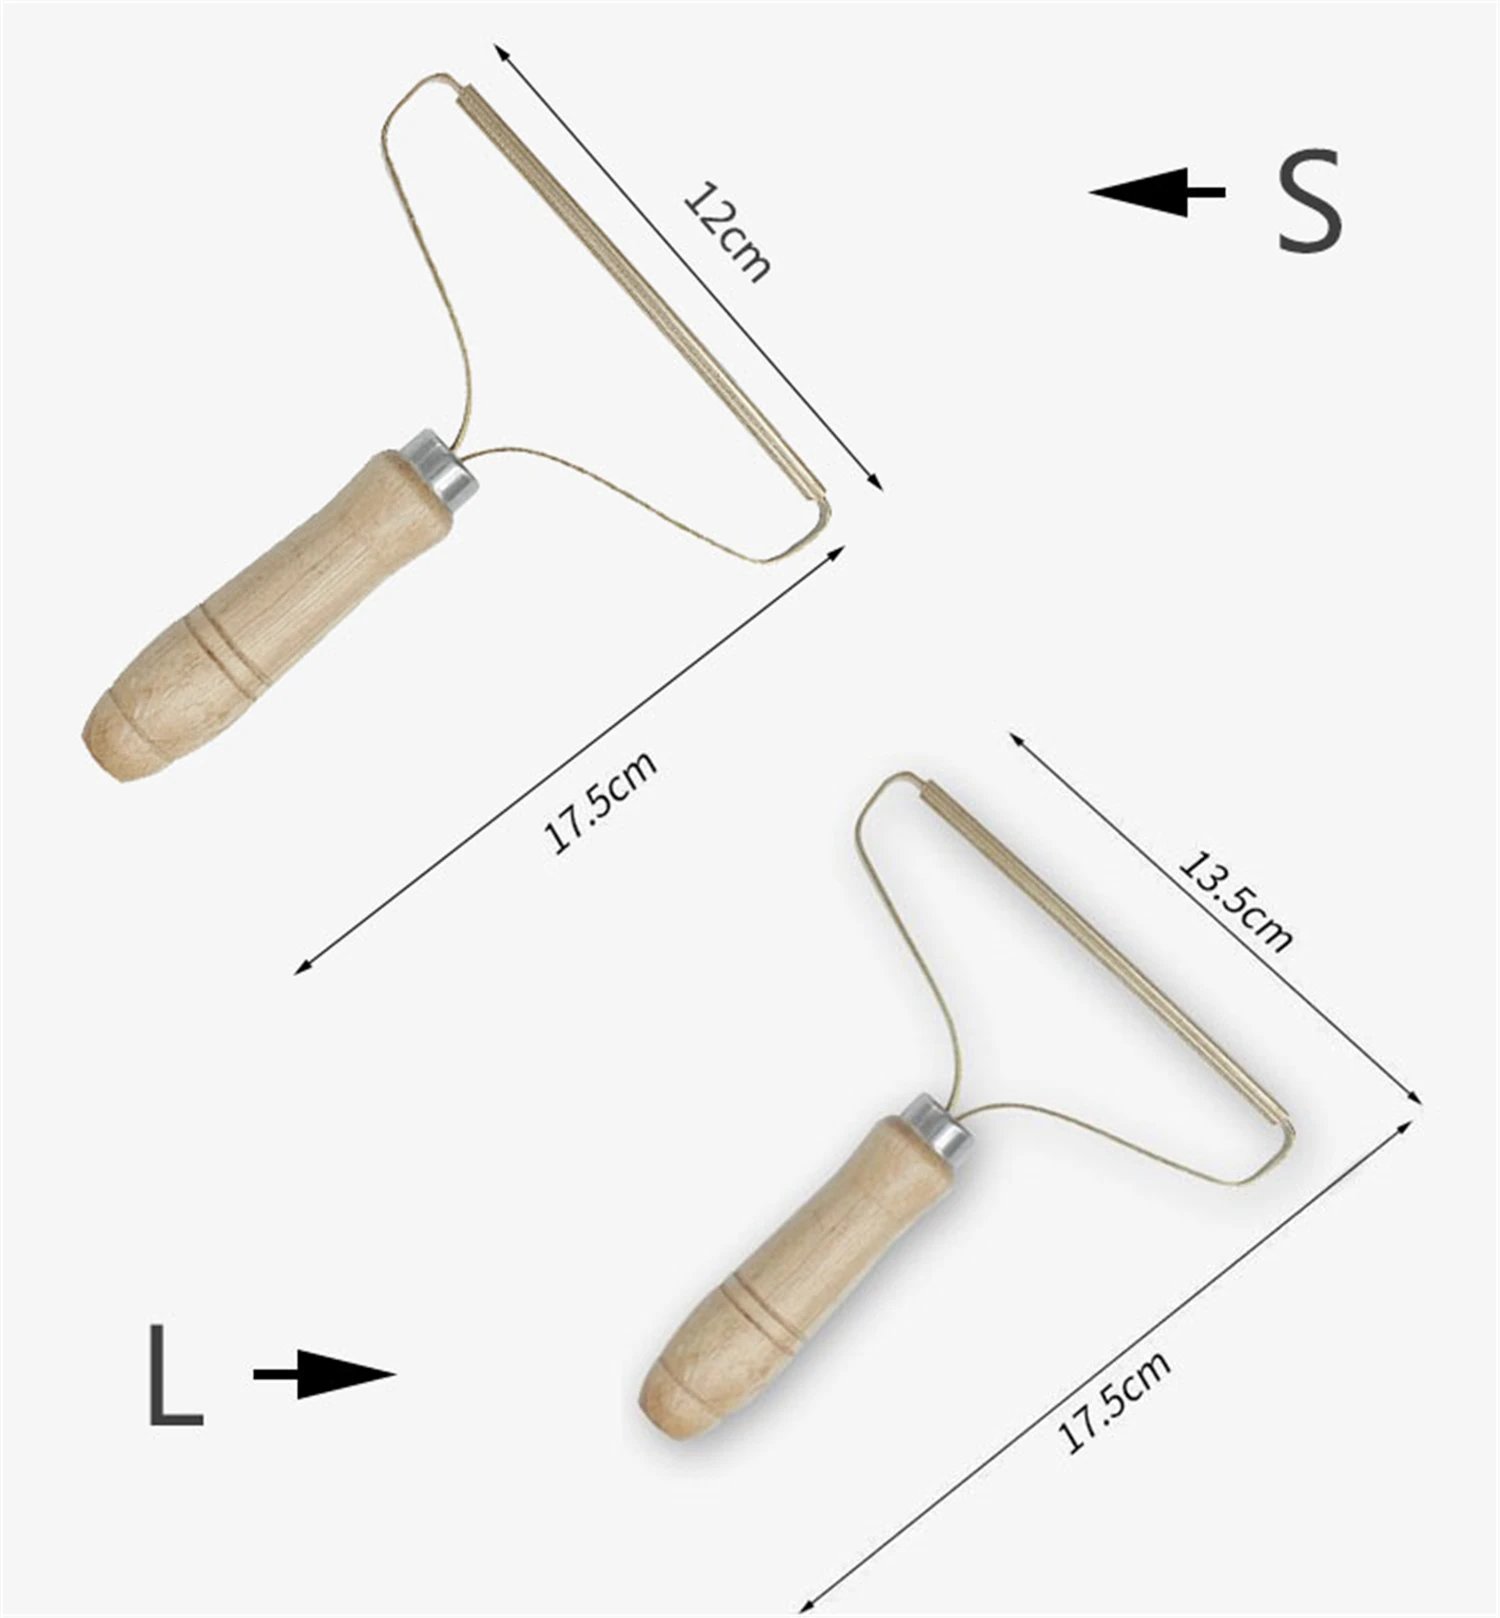 Портативный прибор для удаления катышков бритва одежды пуха ткани инструмент